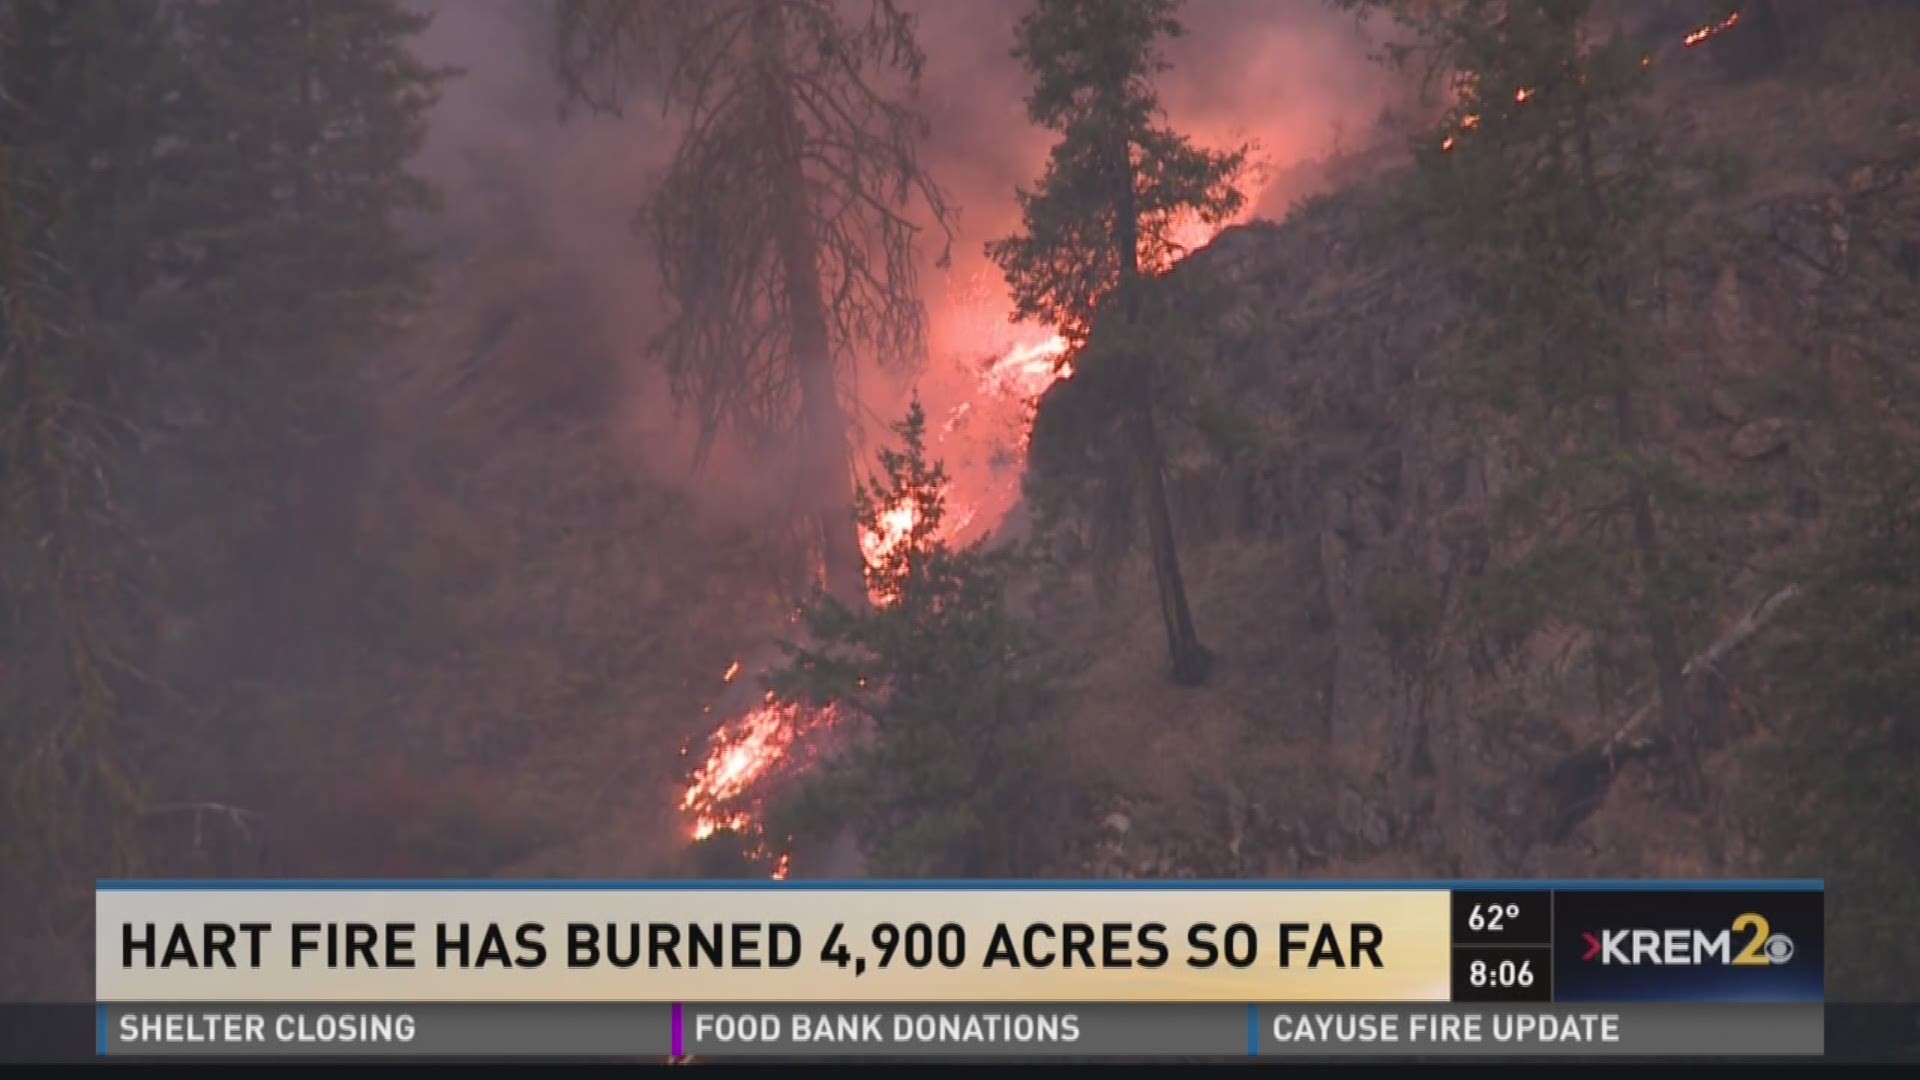 Hart Fire has burned 4,900 acres (Thursday update, 8/25)